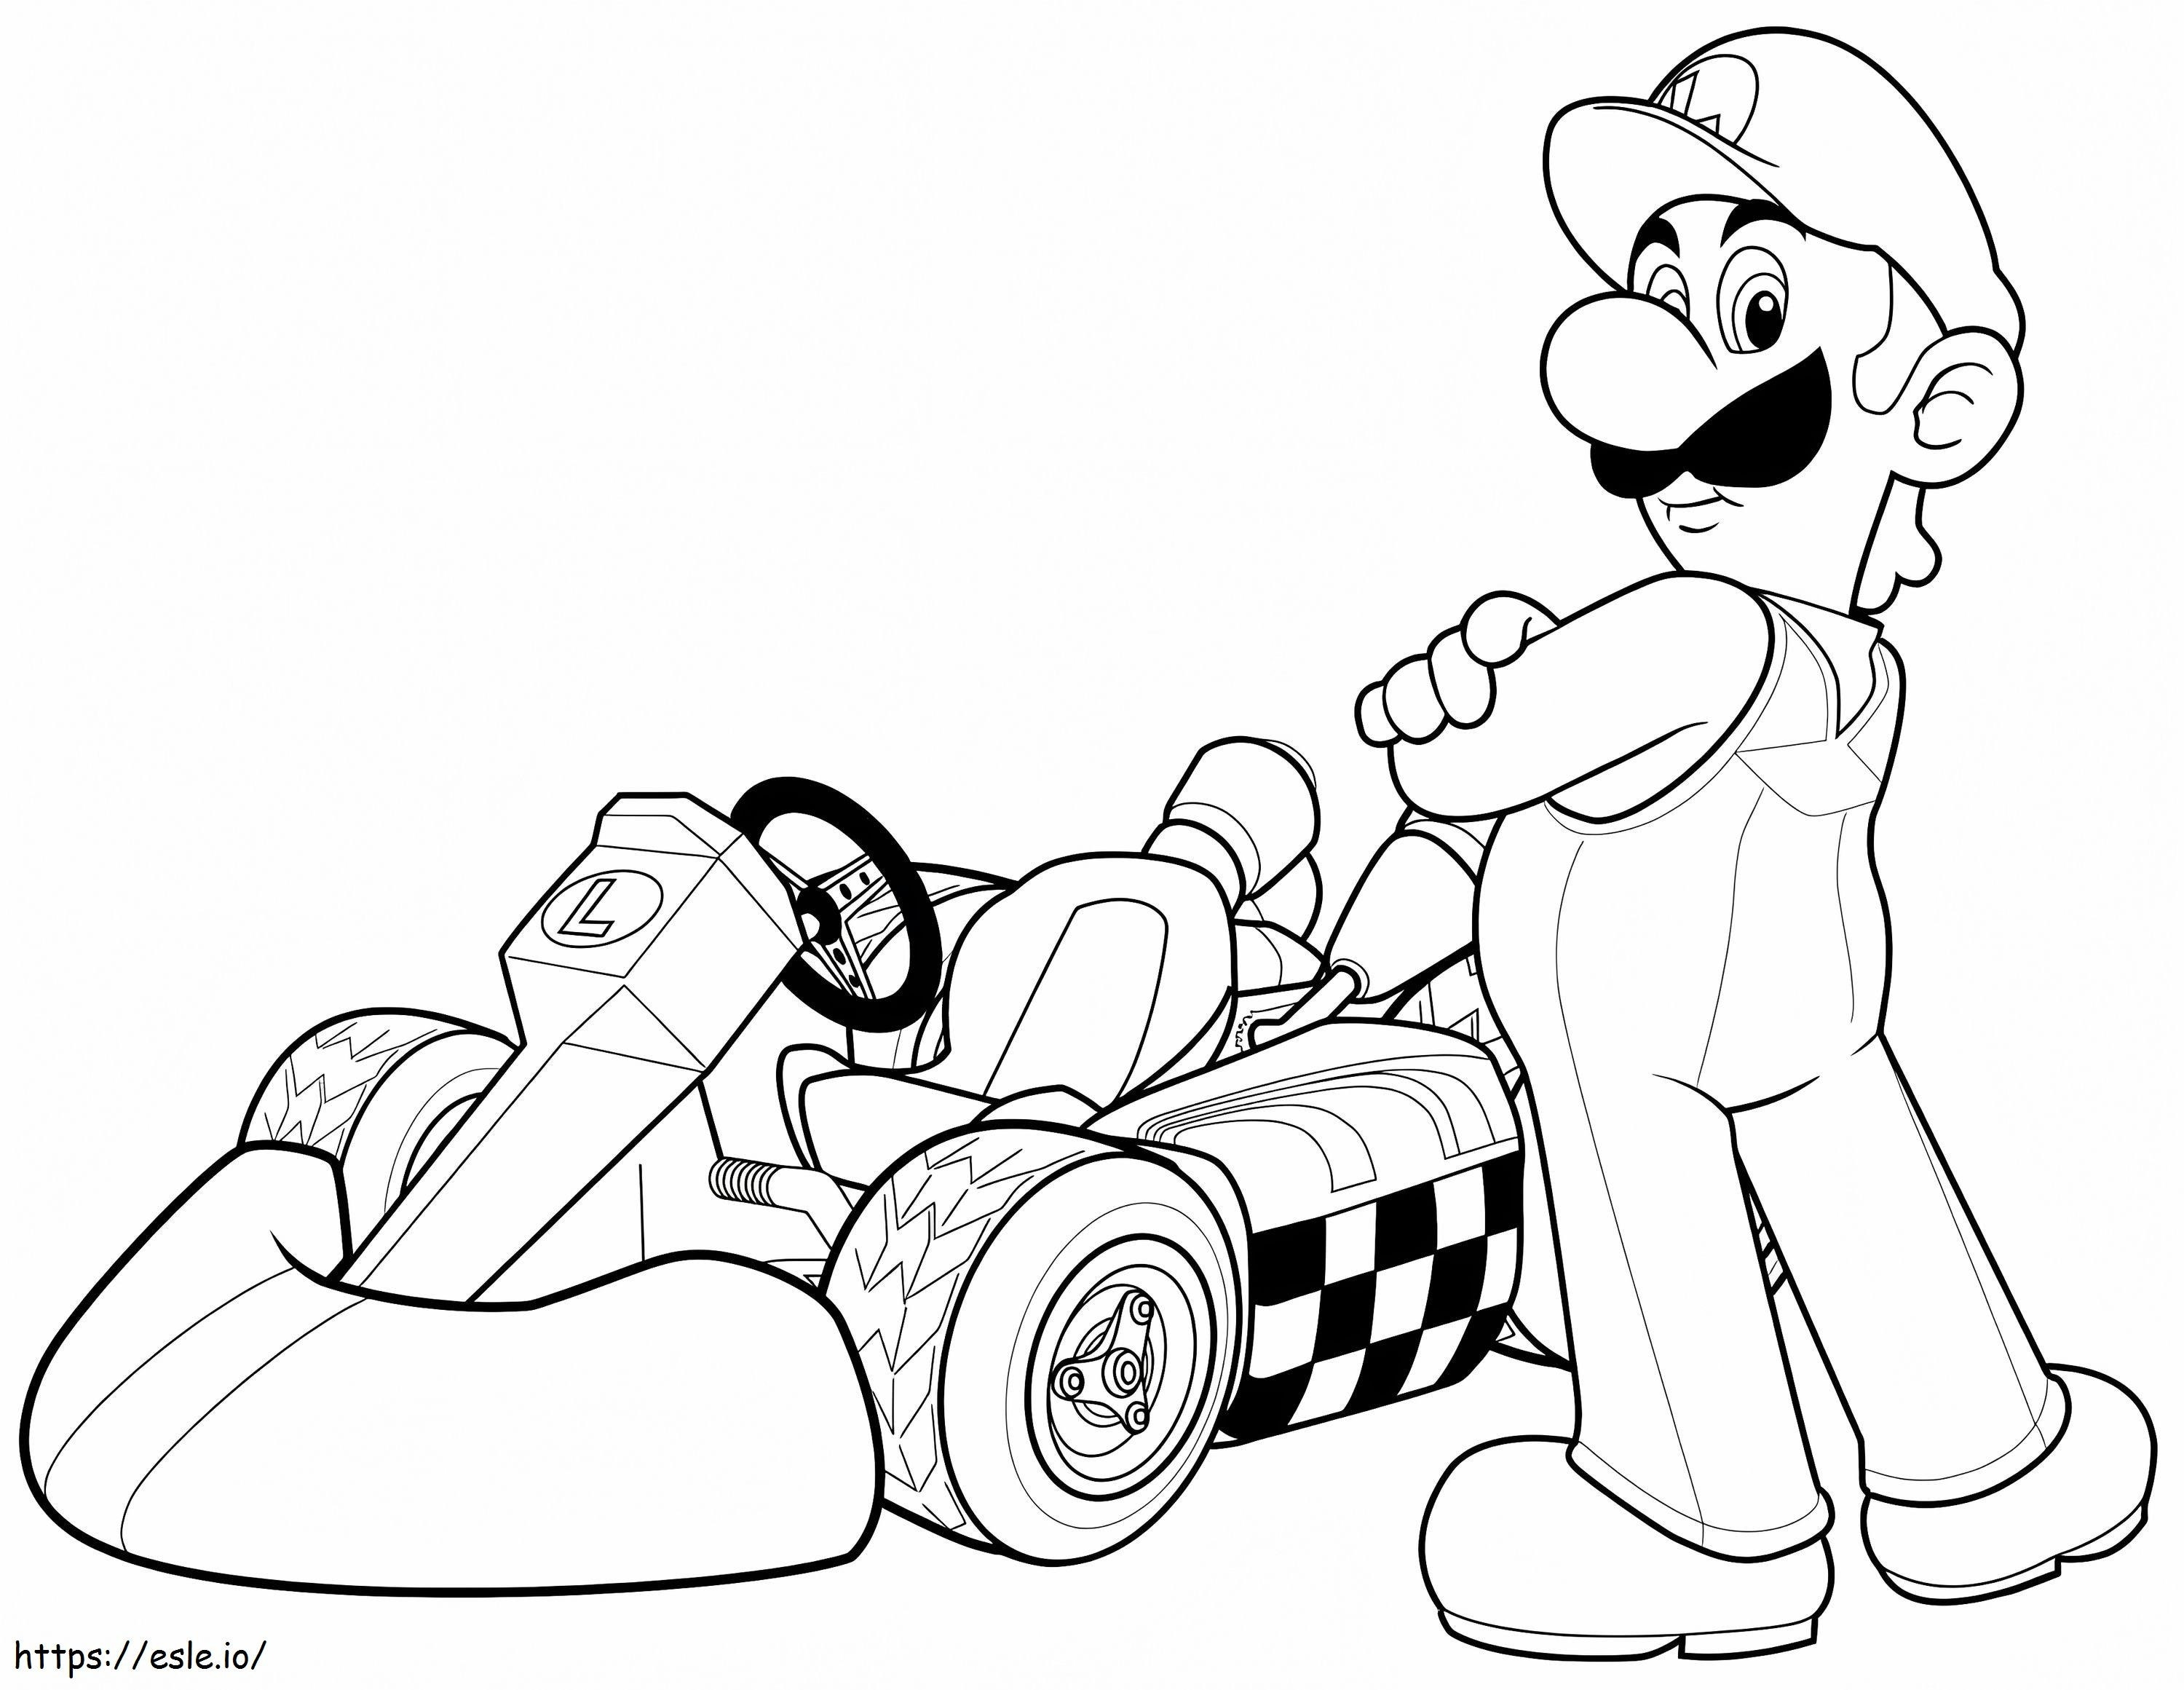 Luigi in Mario Kart Wii kleurplaat kleurplaat